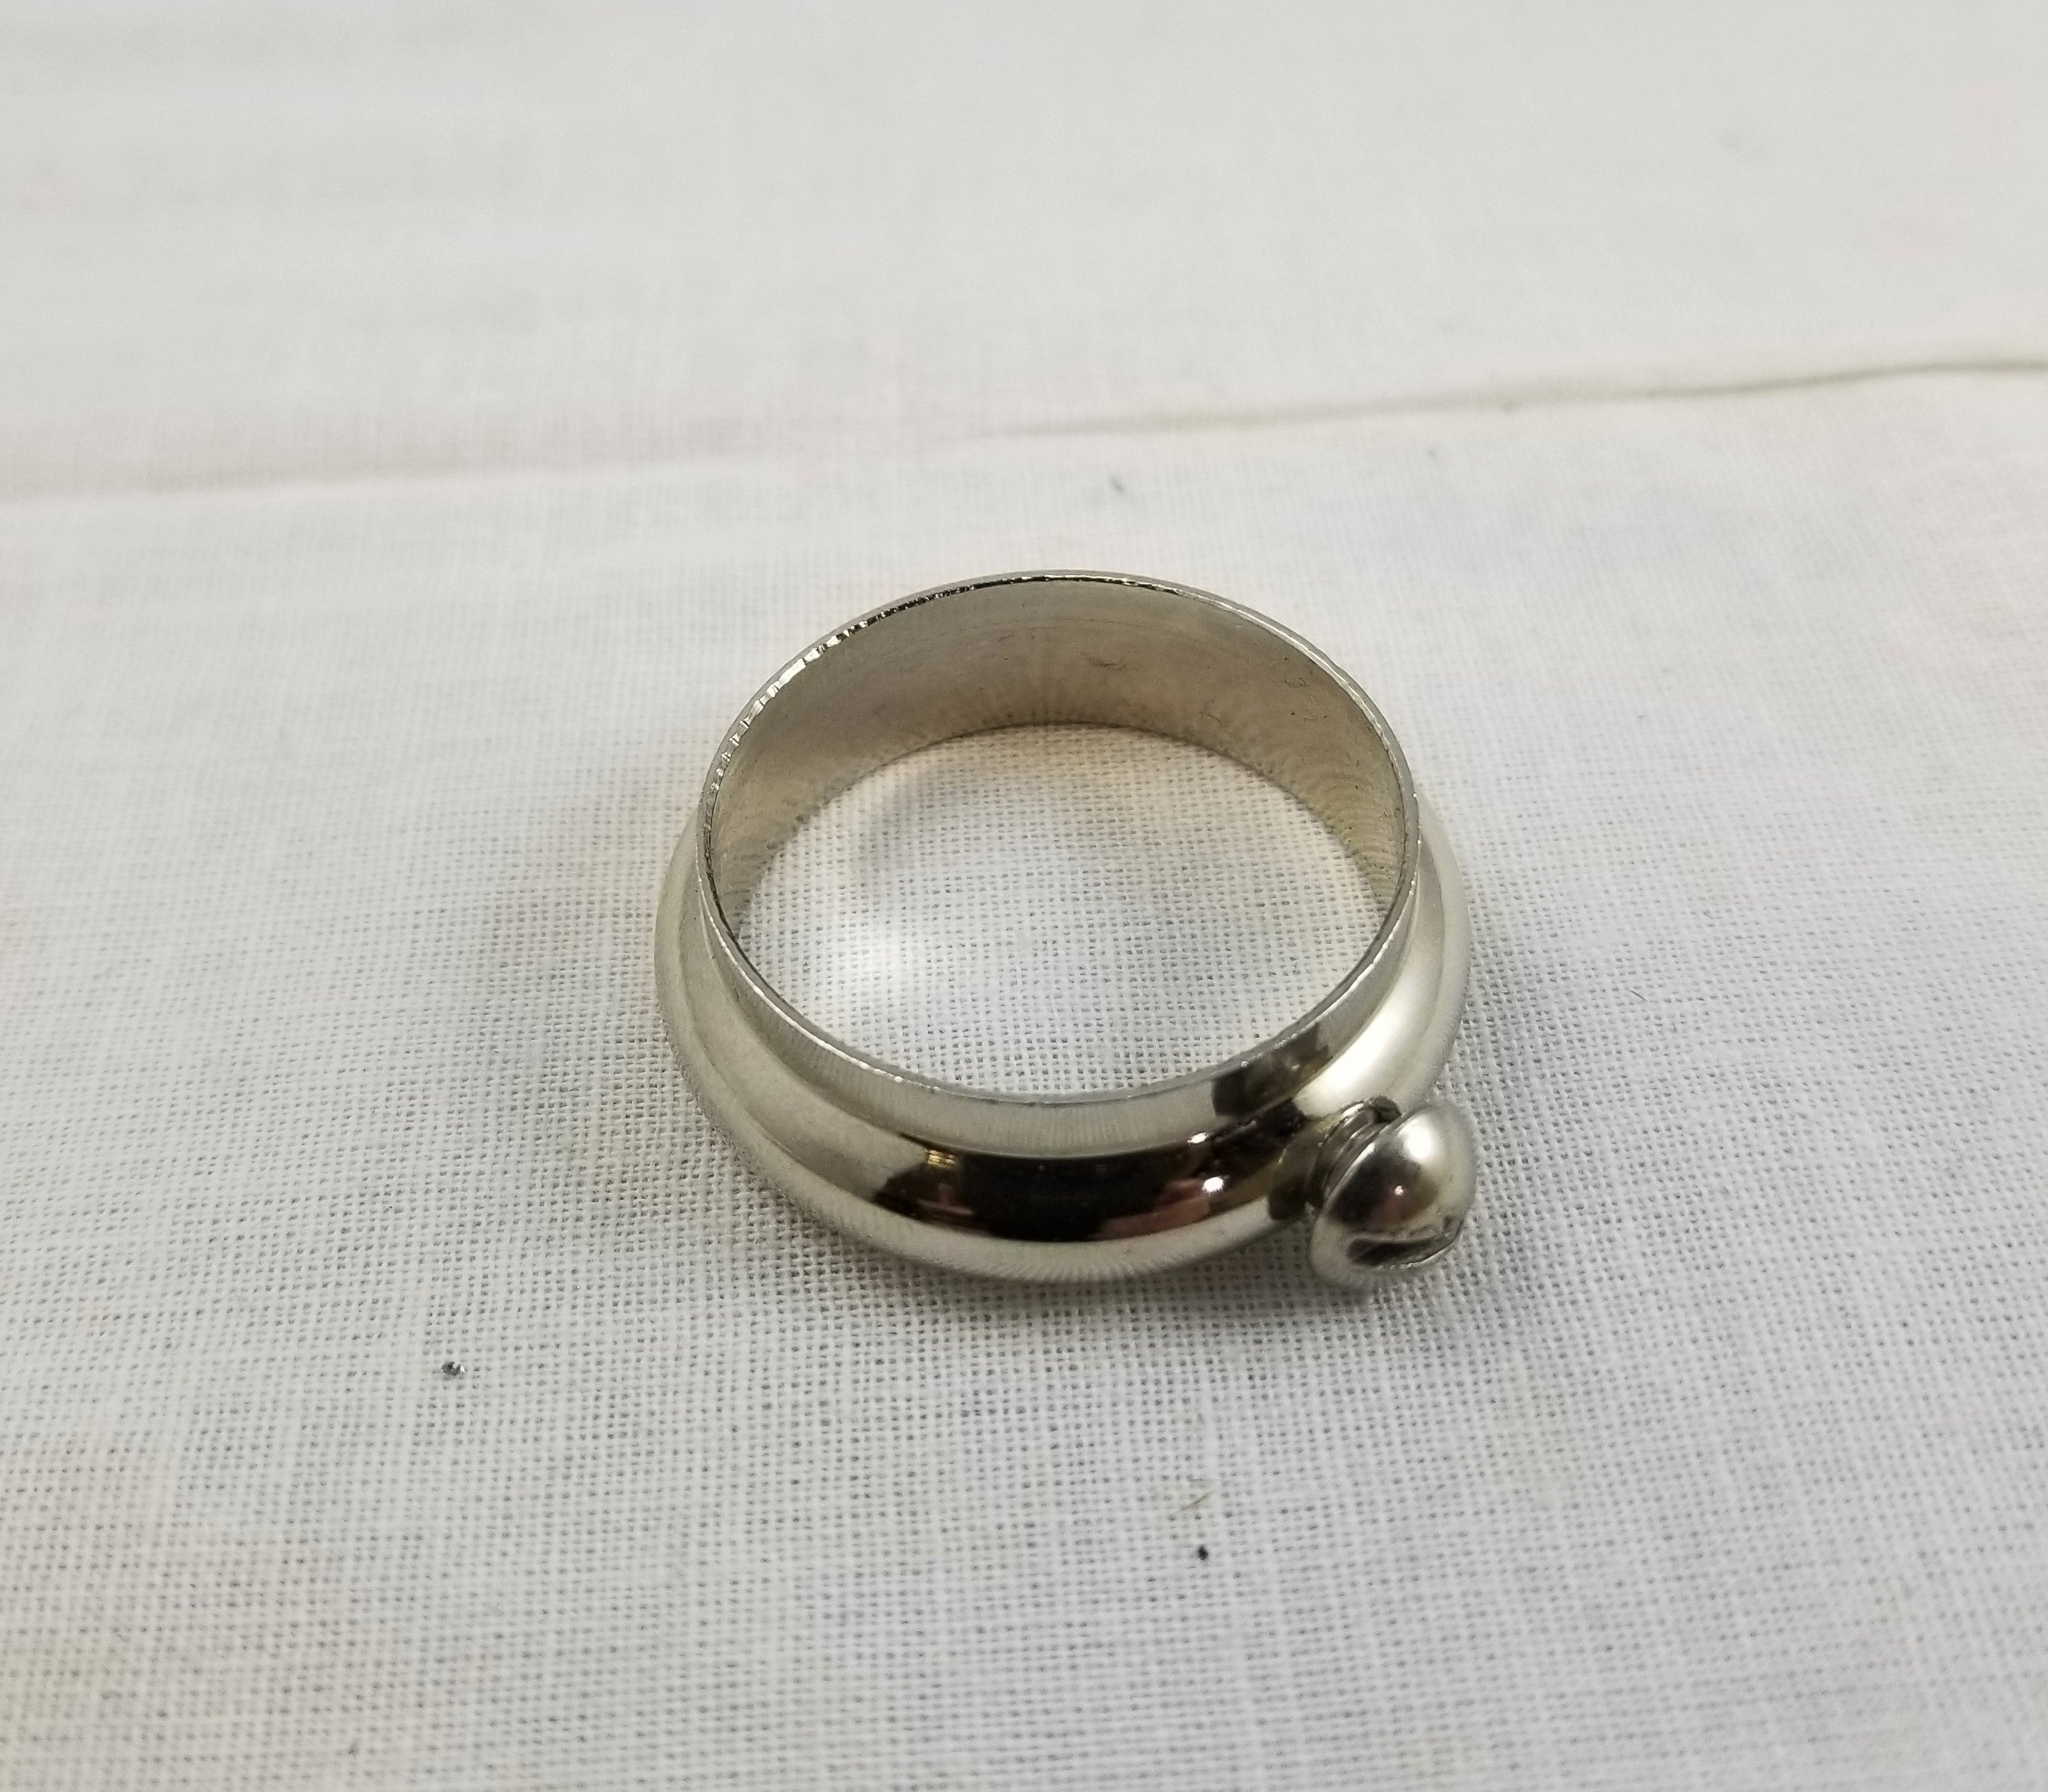 1" Slip Ring Solid Brass - Chrome Plated - Slips 1" Tubing